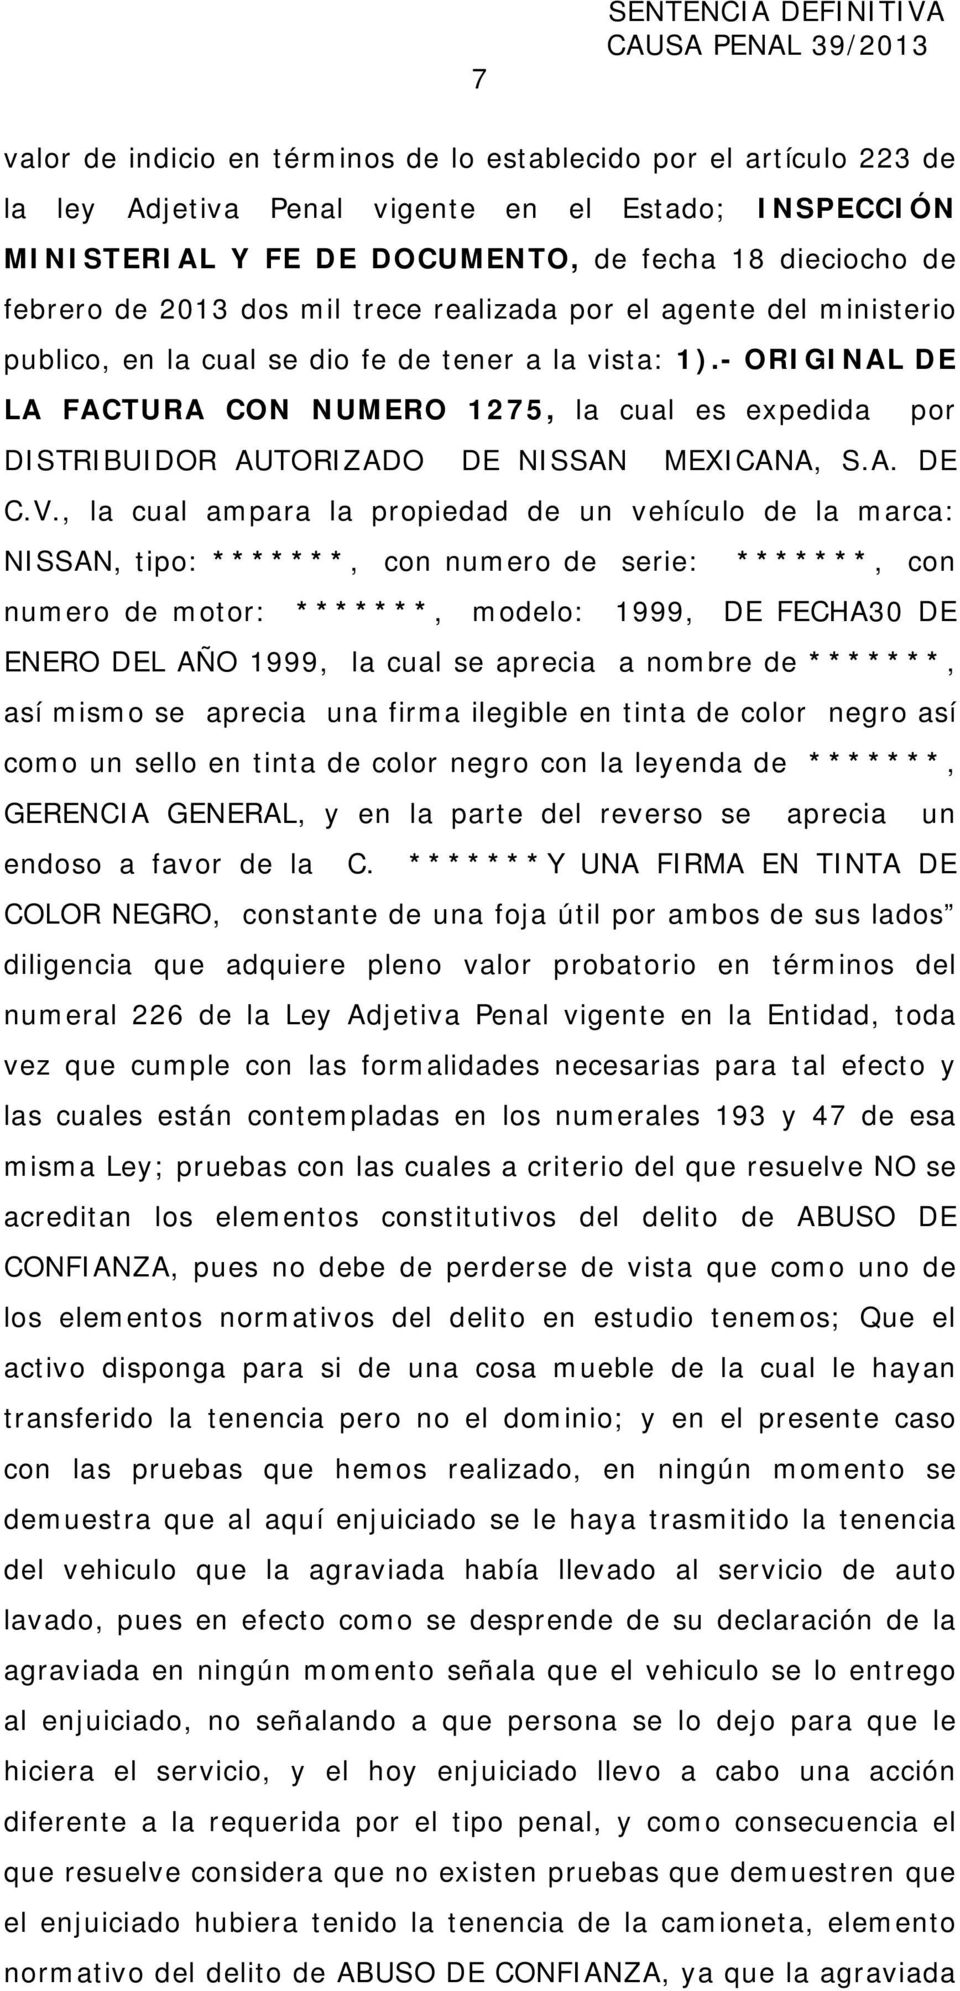 - ORIGINAL DE LA FACTURA CON NUMERO 1275, la cual es expedida por DISTRIBUIDOR AUTORIZADO DE NISSAN MEXICANA, S.A. DE C.V.